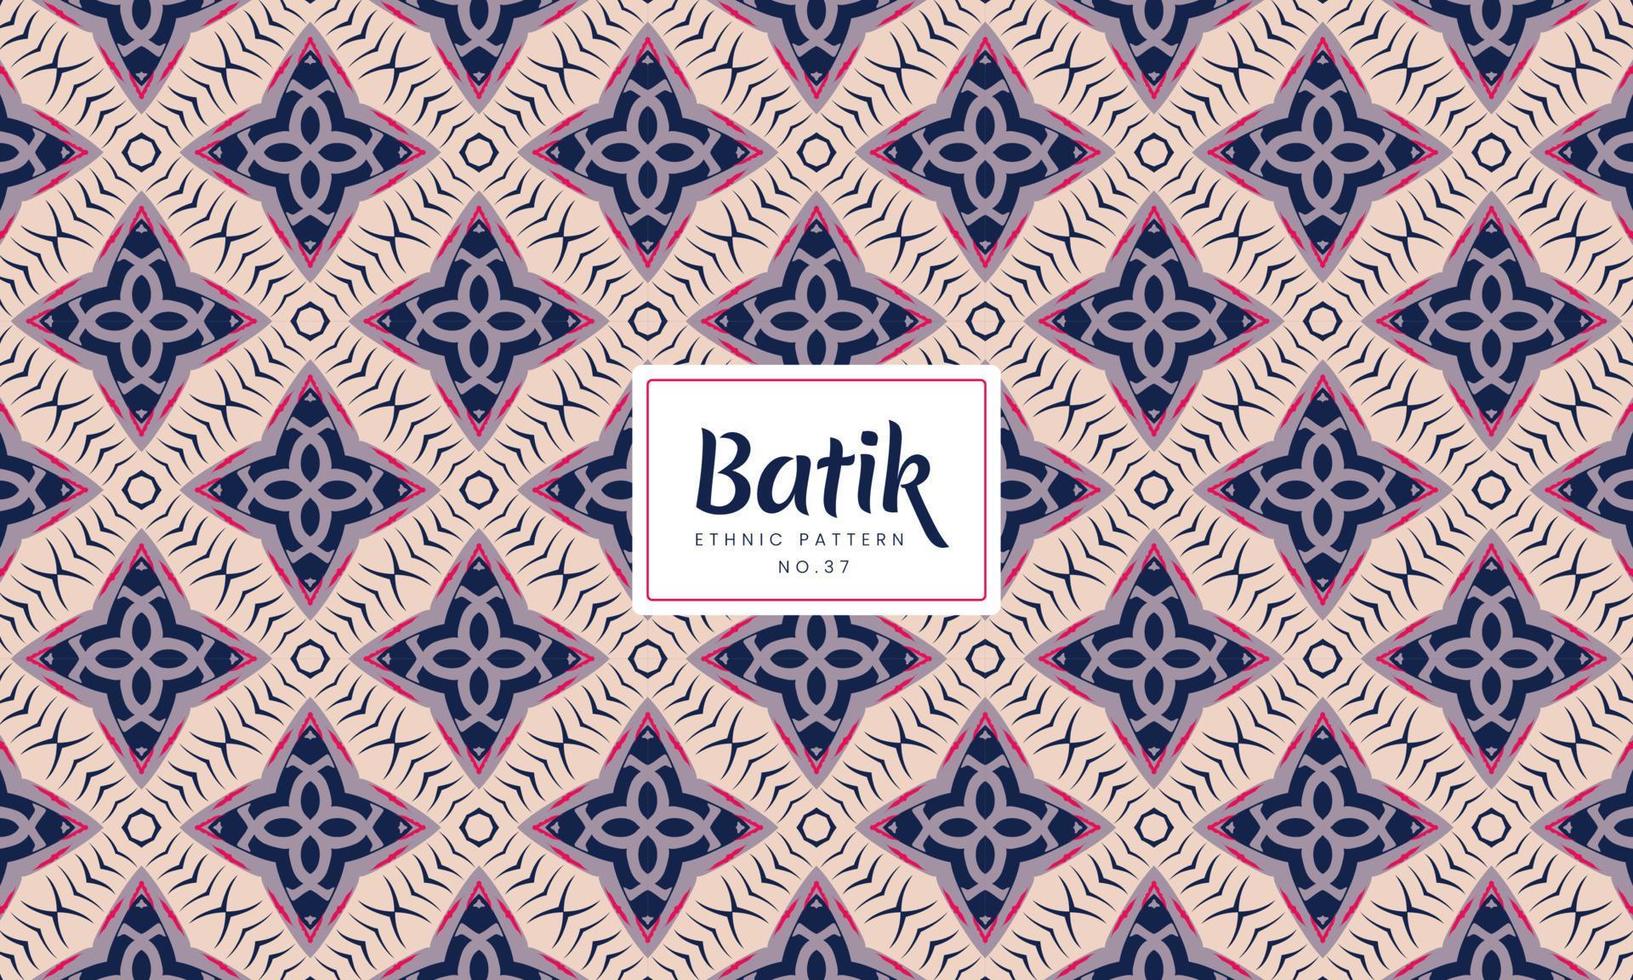 abstracte batik Indonesische traditionele naadloze etnische bloemenpatronen vector background